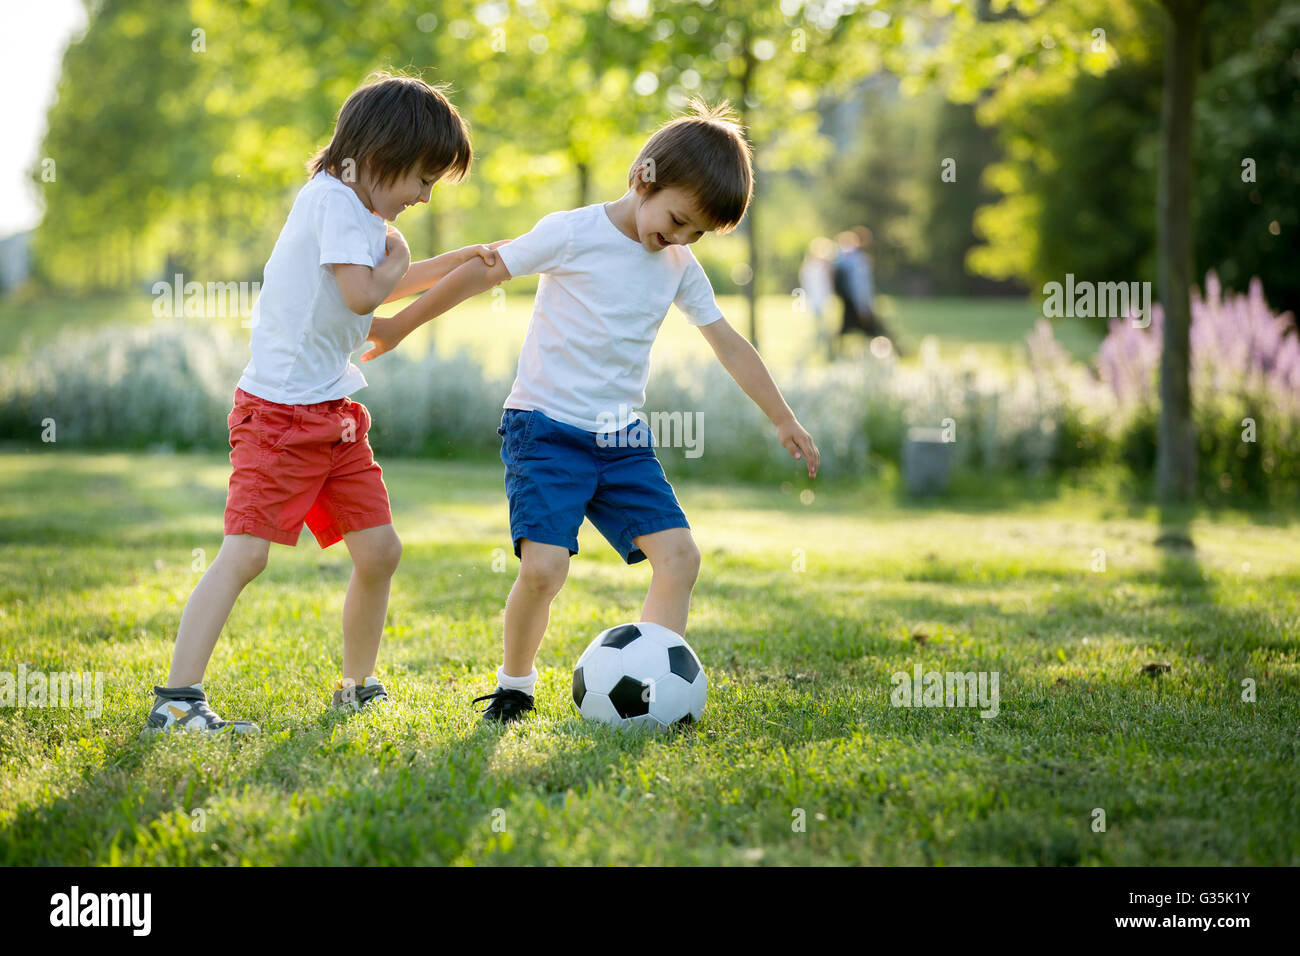 Zwei süße kleine Kinder, gemeinsam Fußball zu spielen, im Sommer. Kinder  spielen Fußball im freien Stockfotografie - Alamy